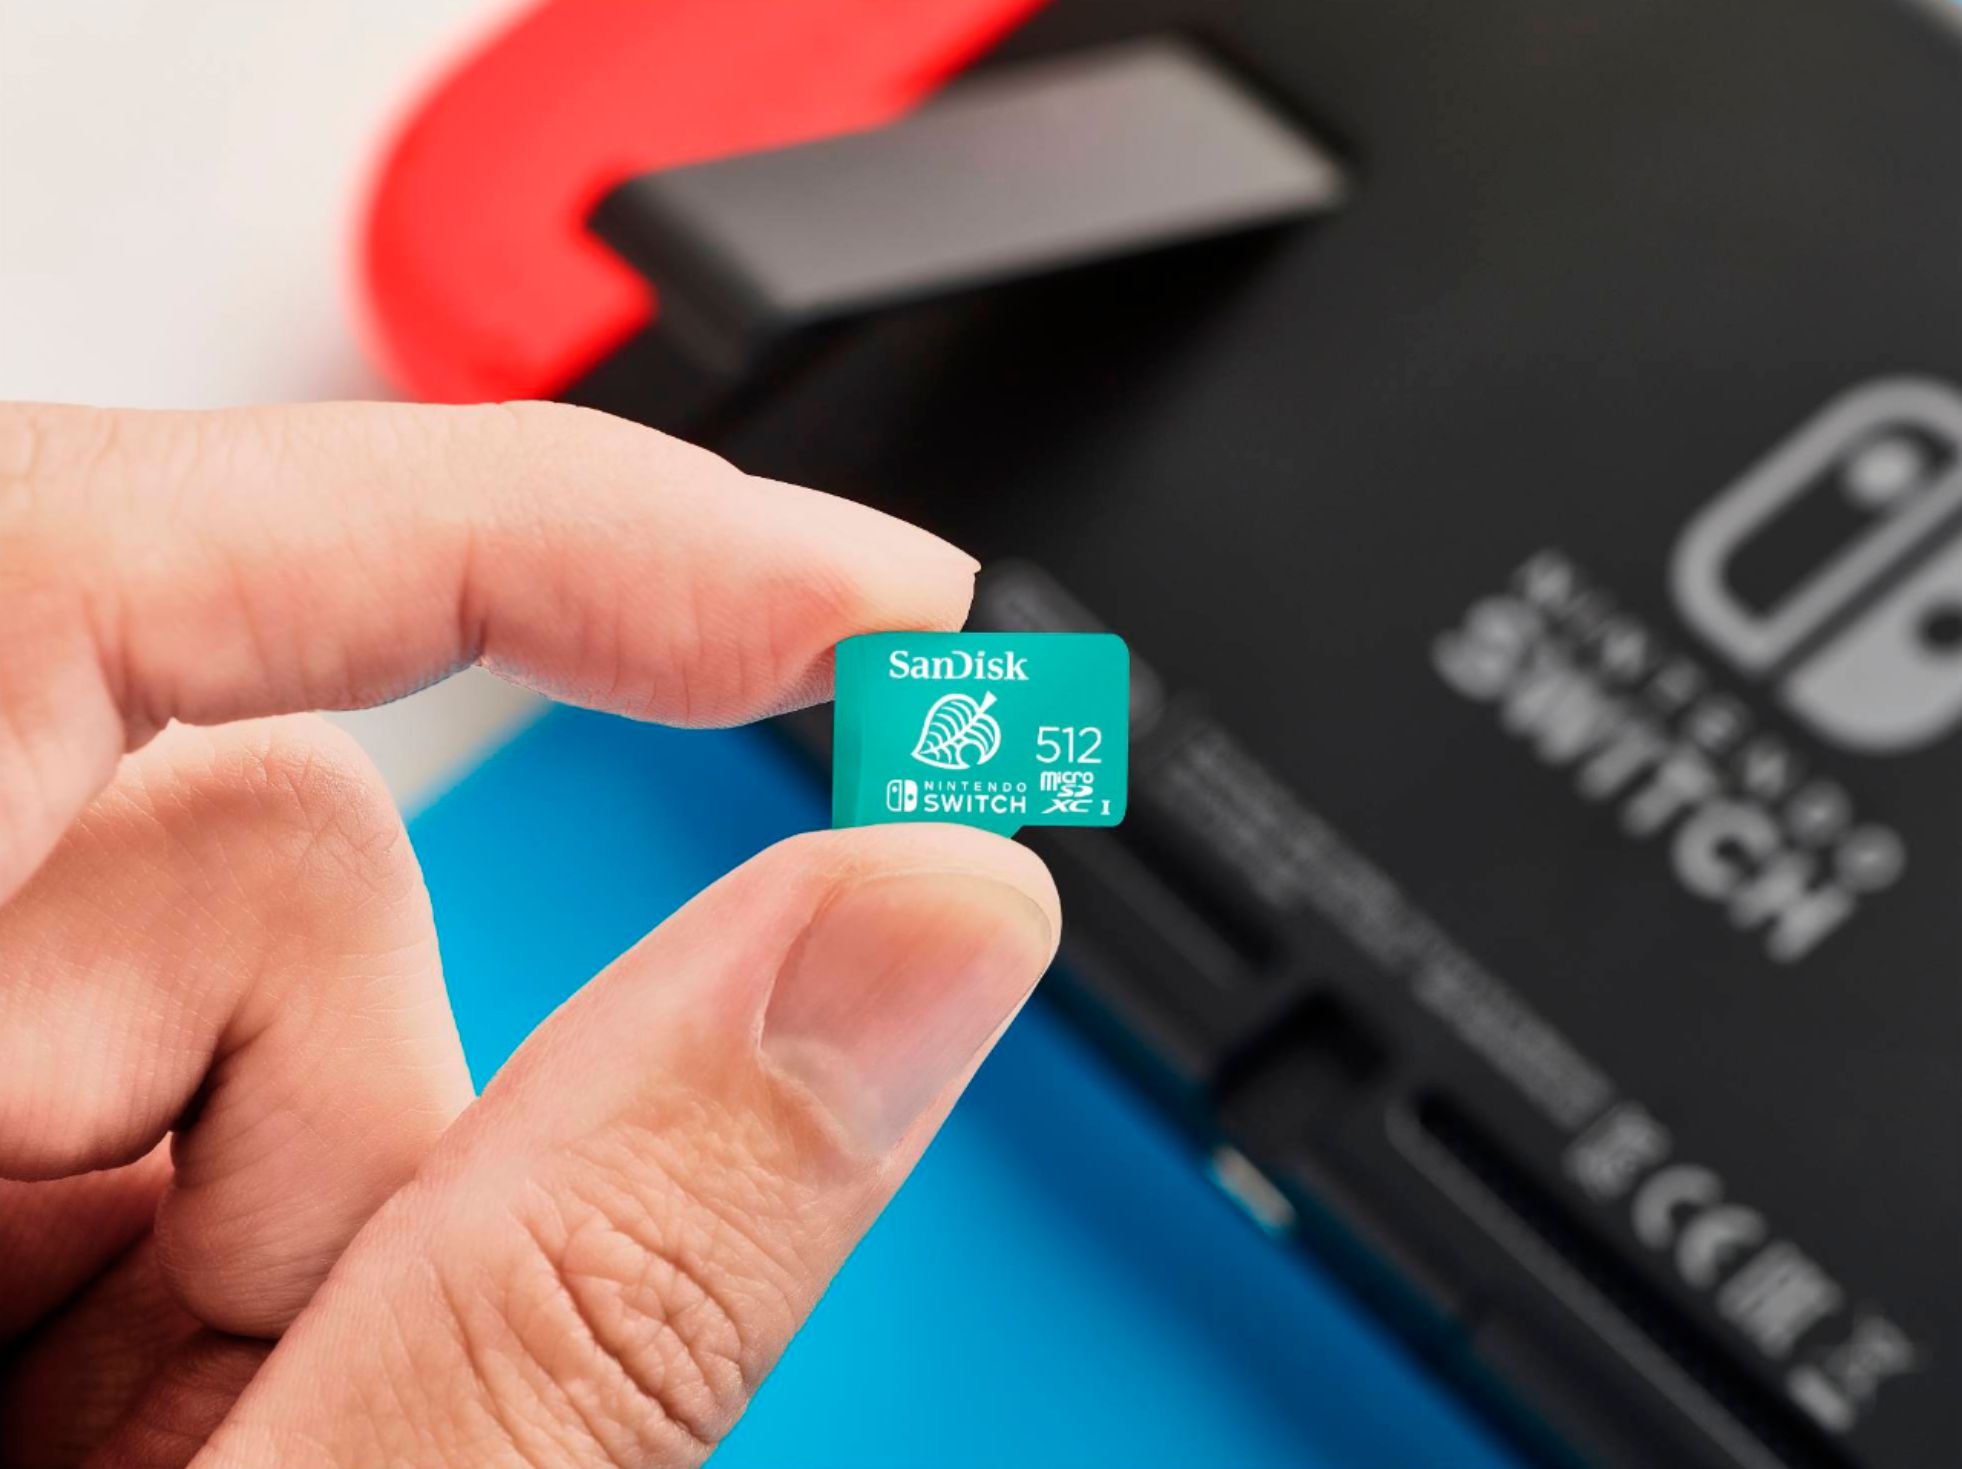 SanDisk microSDXC pour Nintendo Switch 512 Go au meilleur prix sur